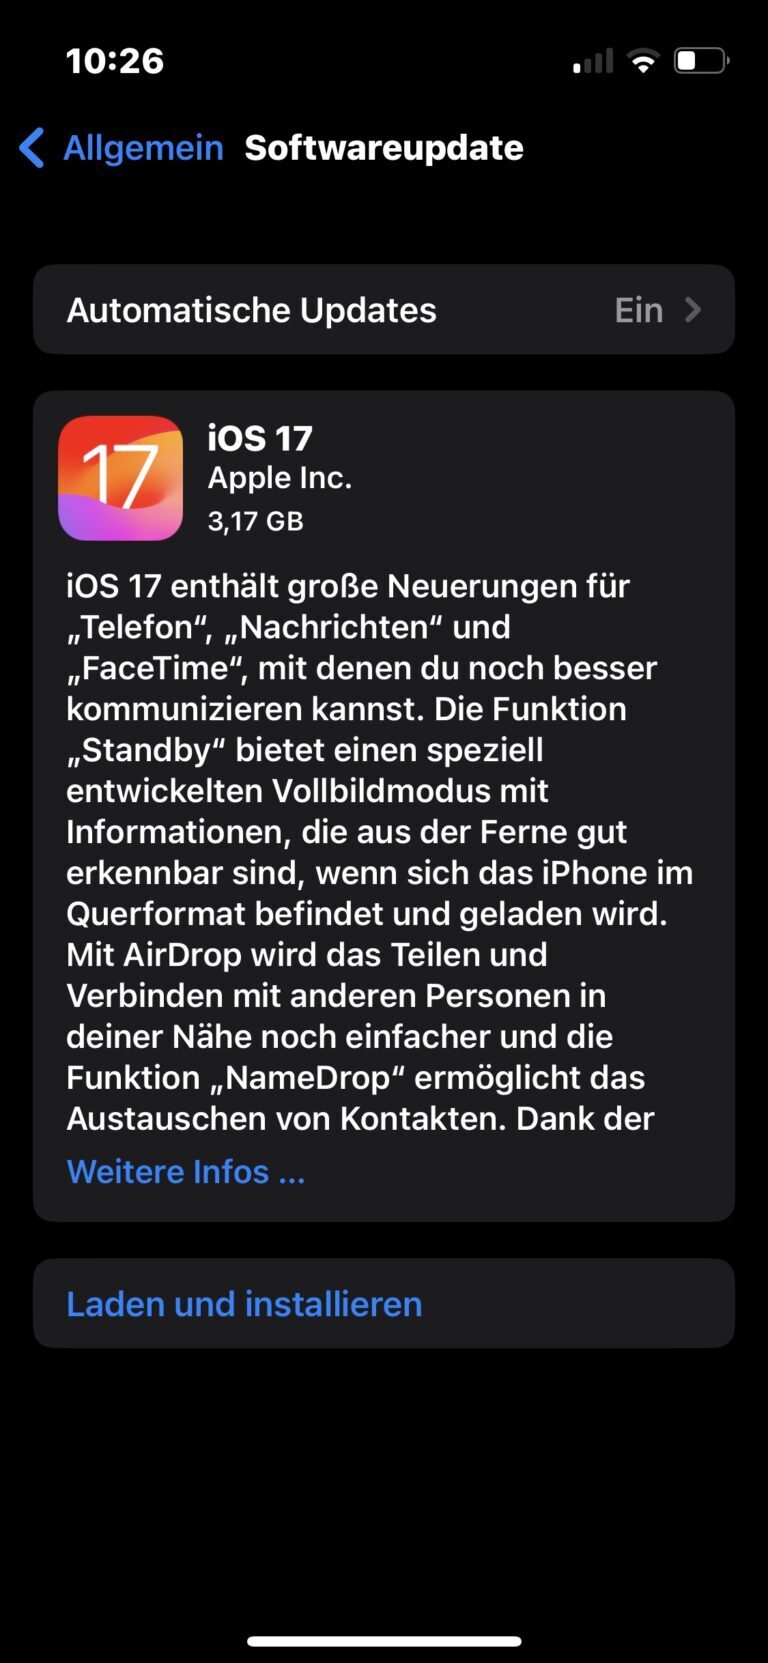 iOS 17 Softwareupdate steht bereits - per manuellem Update geht es meist schneller